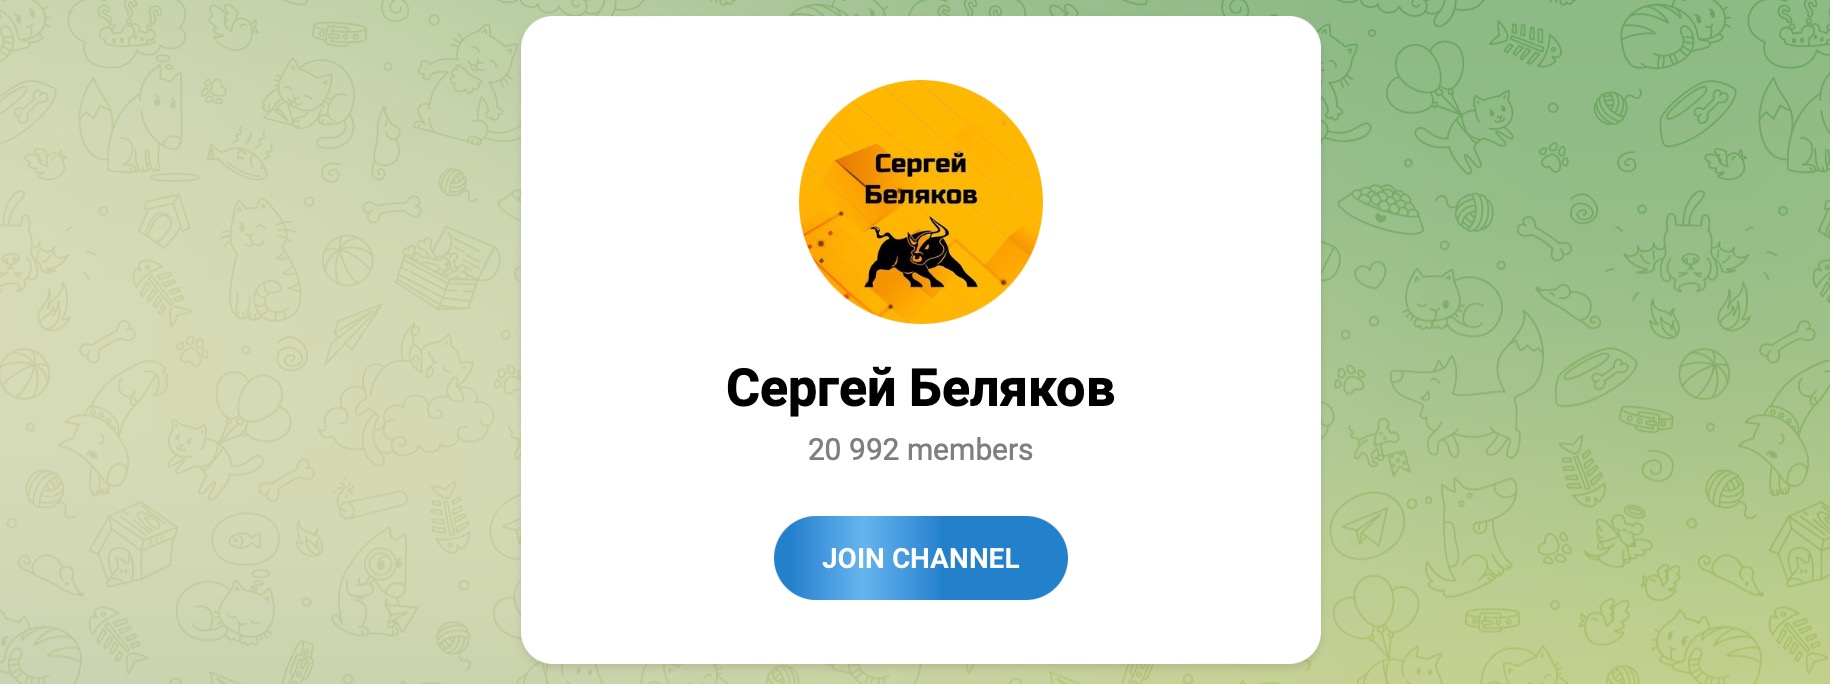 Внешний вид телеграм канала Сергей Беляков